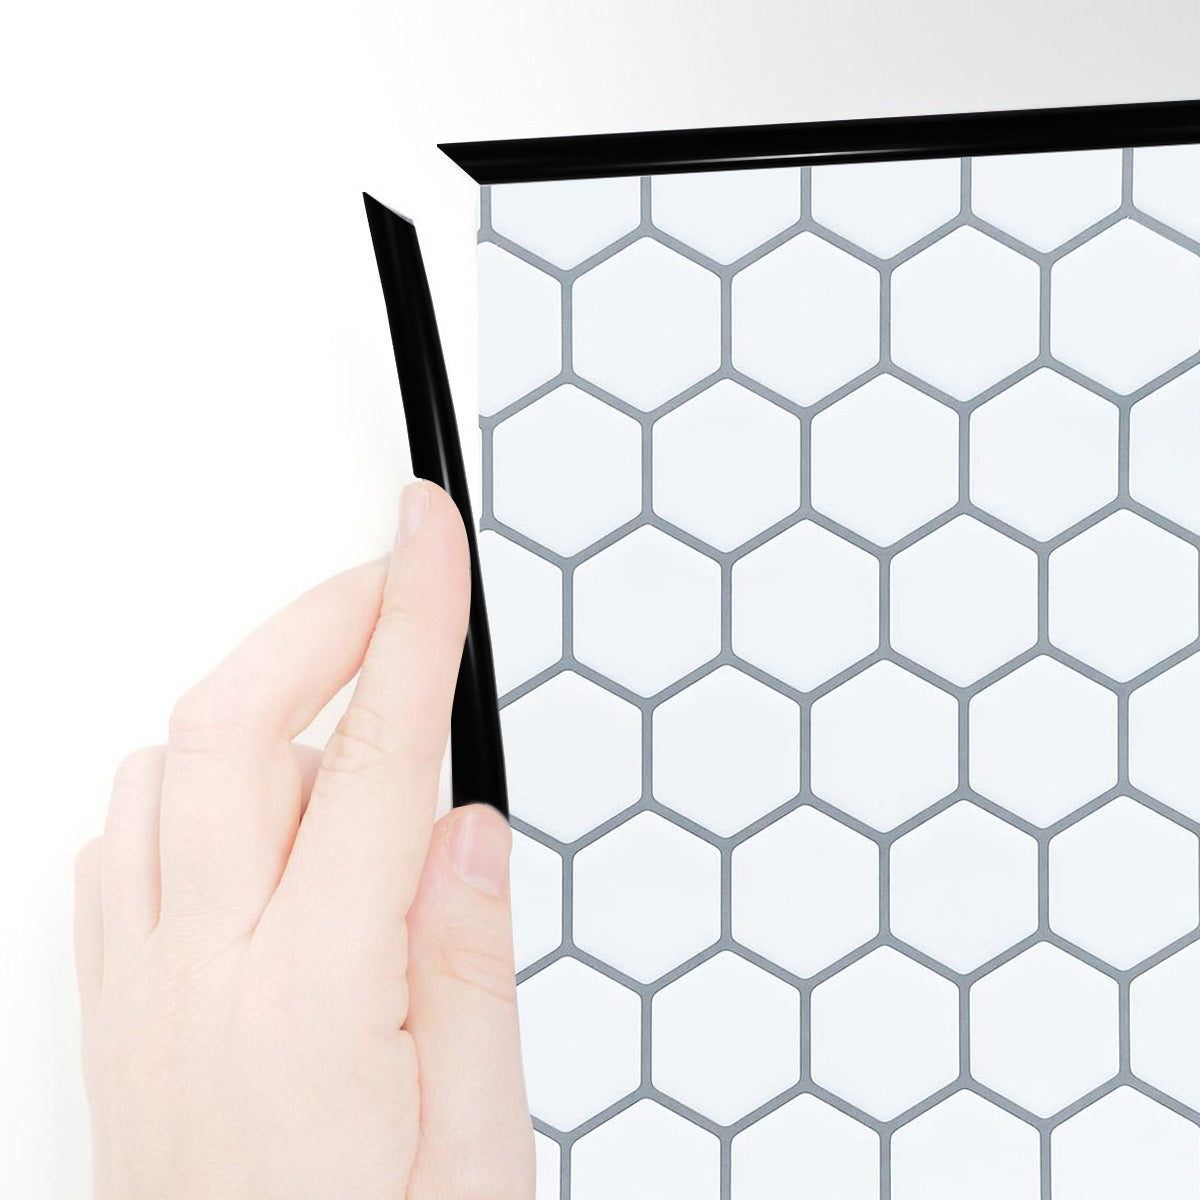 Black edge trim around white hexagon tile